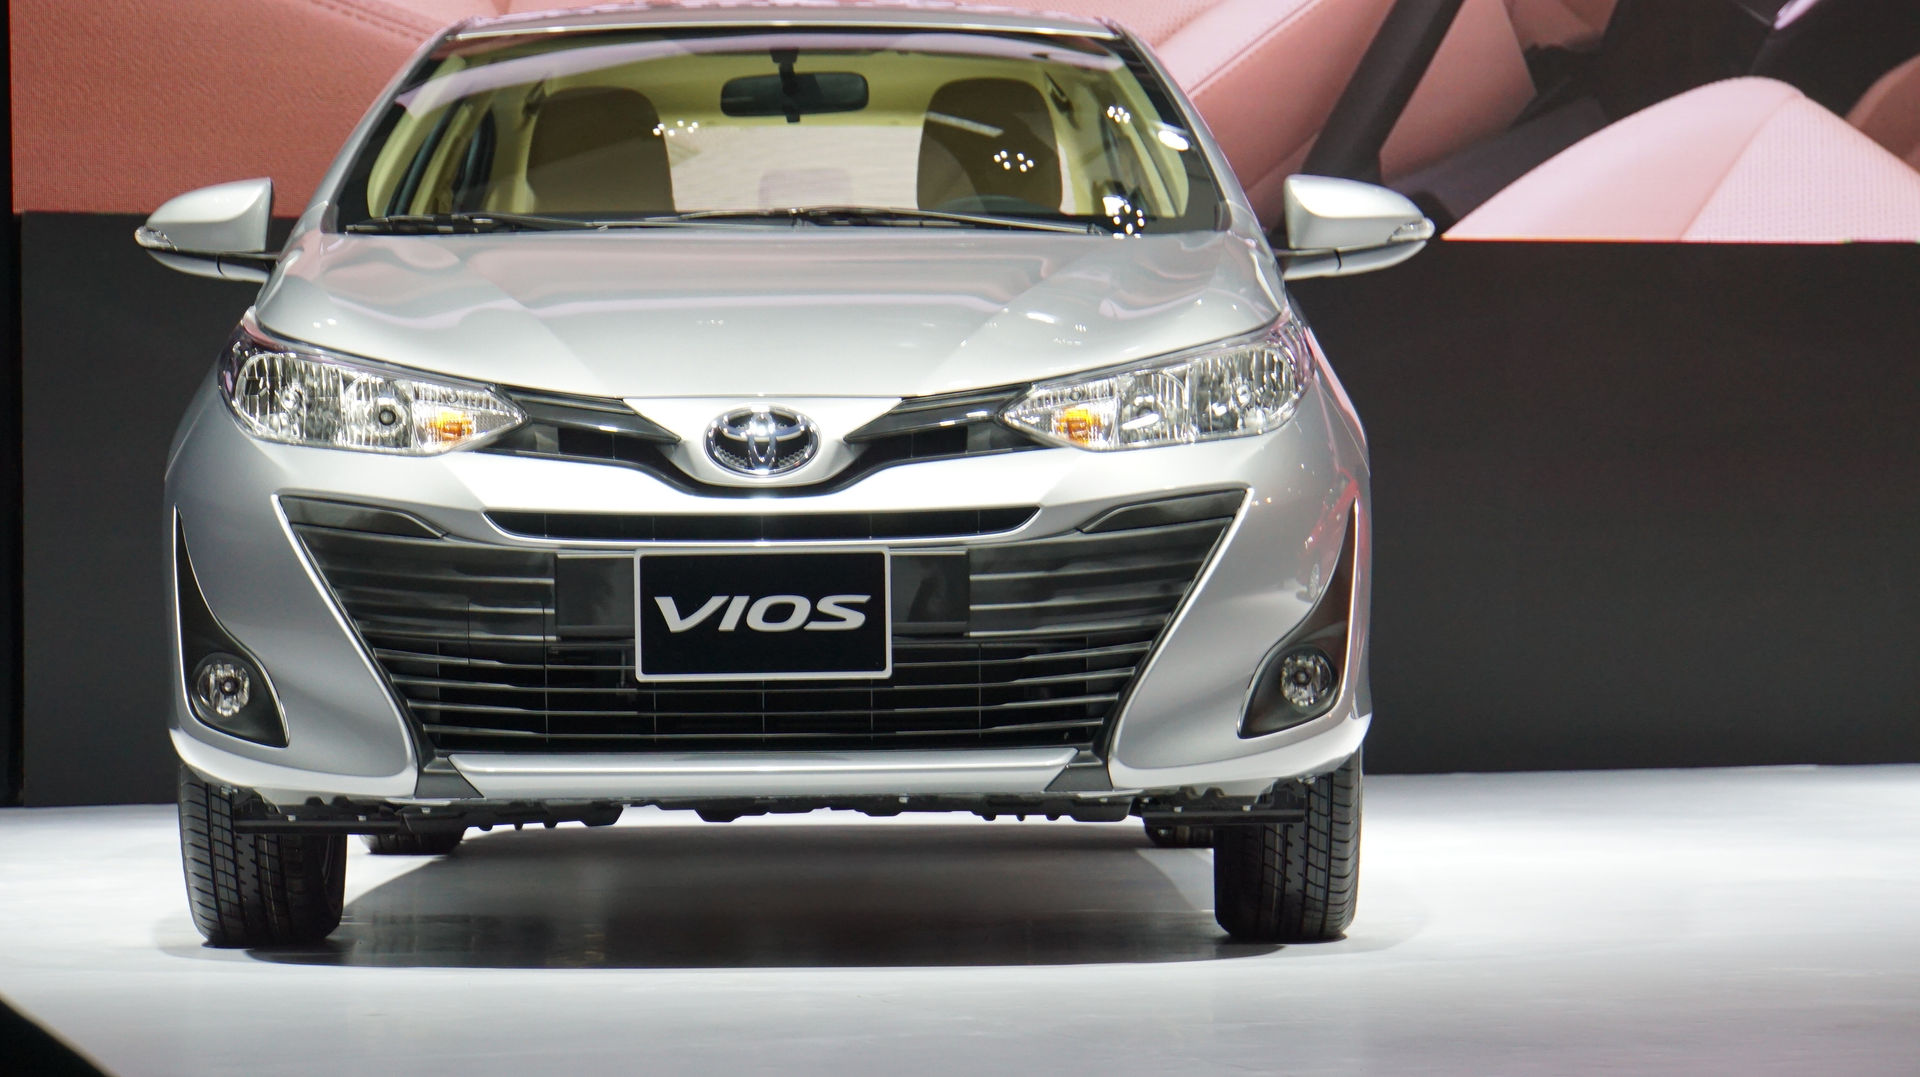 Ra mắt Toyota Vios 2018 mới với giá từ 531 triệu đồng, Yaris giá 650 triệu đồng